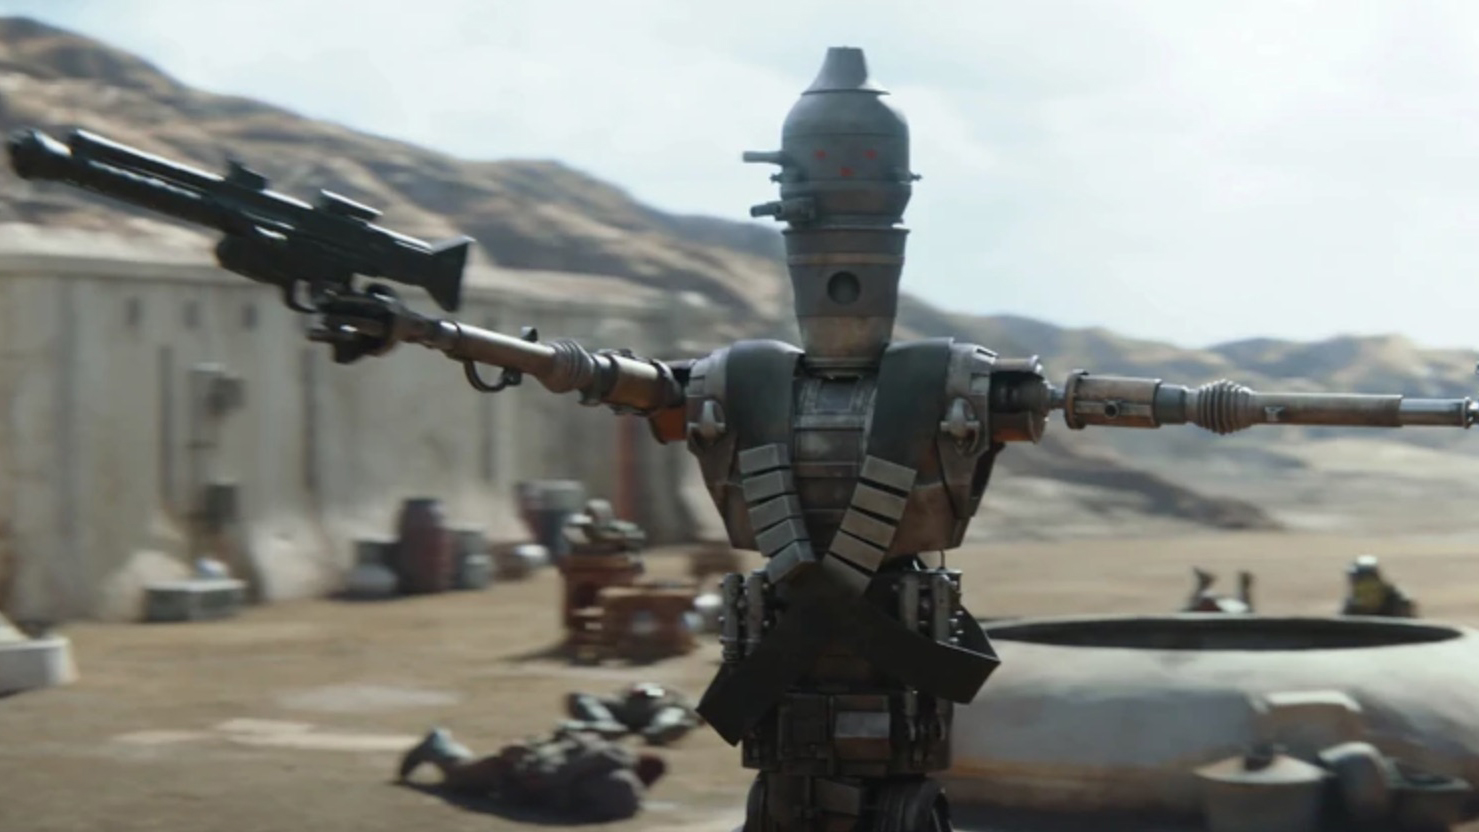 Droid pemburu hadiah IG-11 dari acara TV Star Wars The Mandalorian.